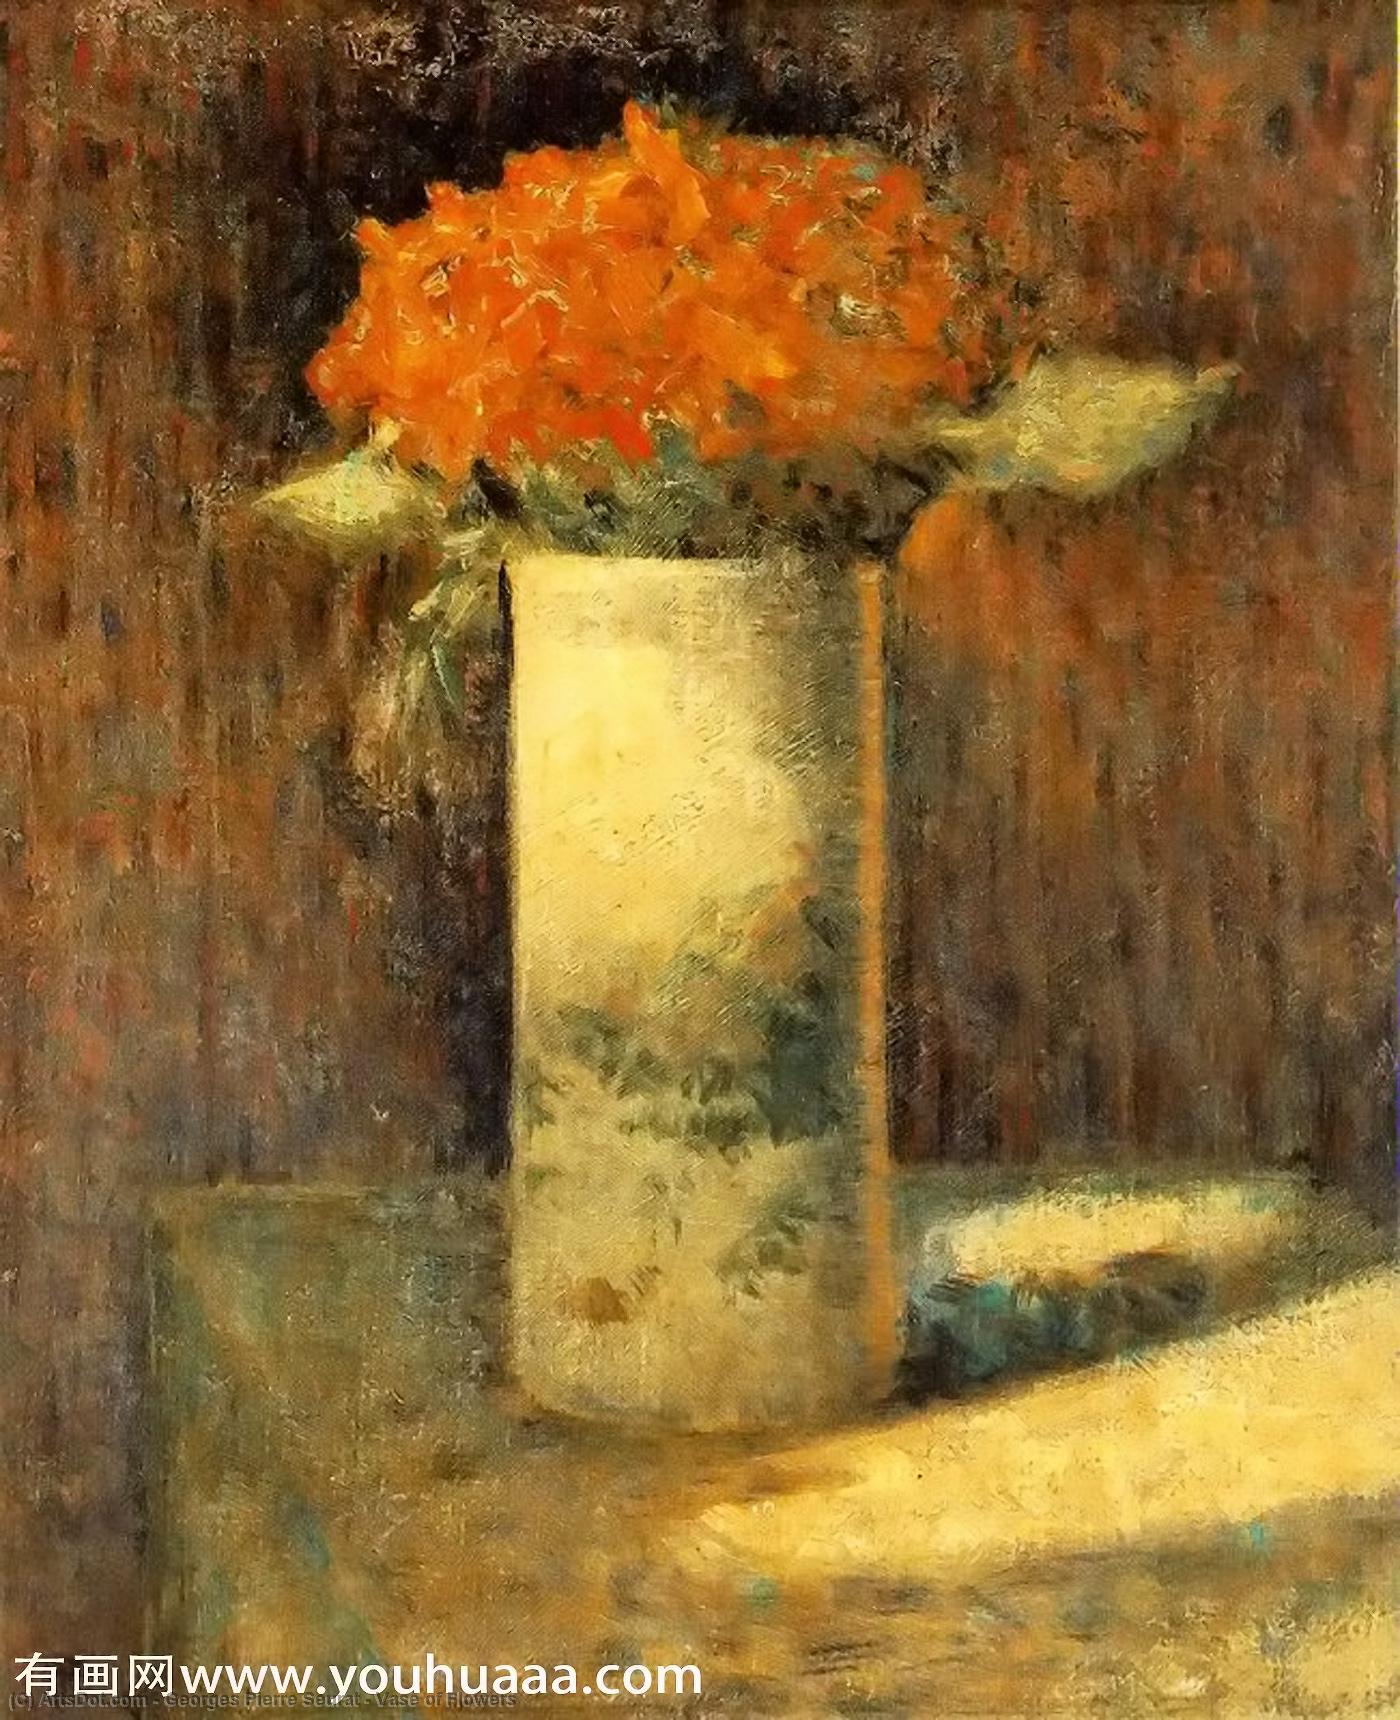 WikiOO.org - Encyclopedia of Fine Arts - Lukisan, Artwork Georges Pierre Seurat - Vase of Flowers